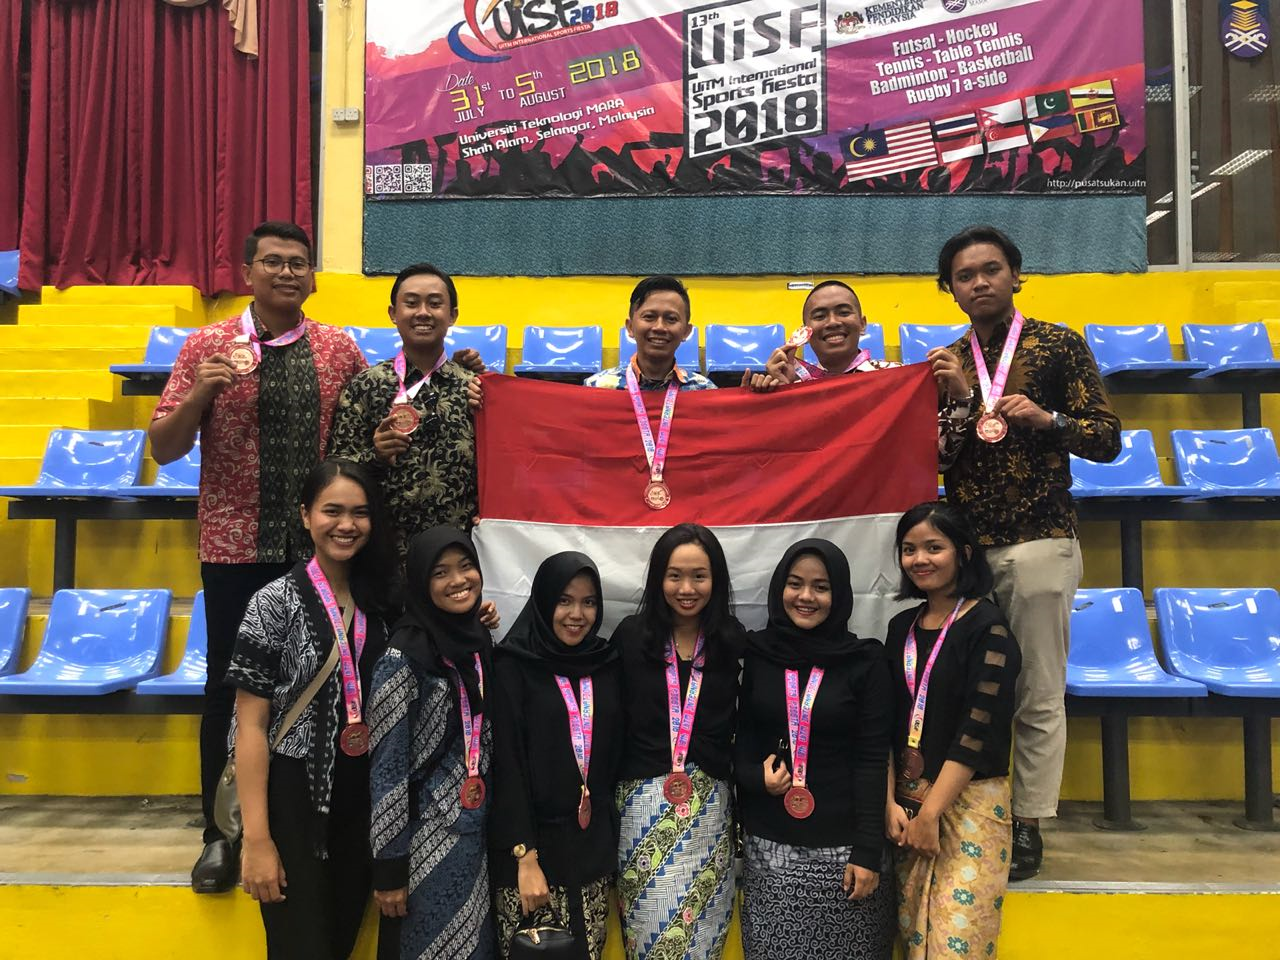 Mahasiswa Vokasi UI raih Prestasi Internasional di Ajang 13th UiTM International Sports Fiesta 2018